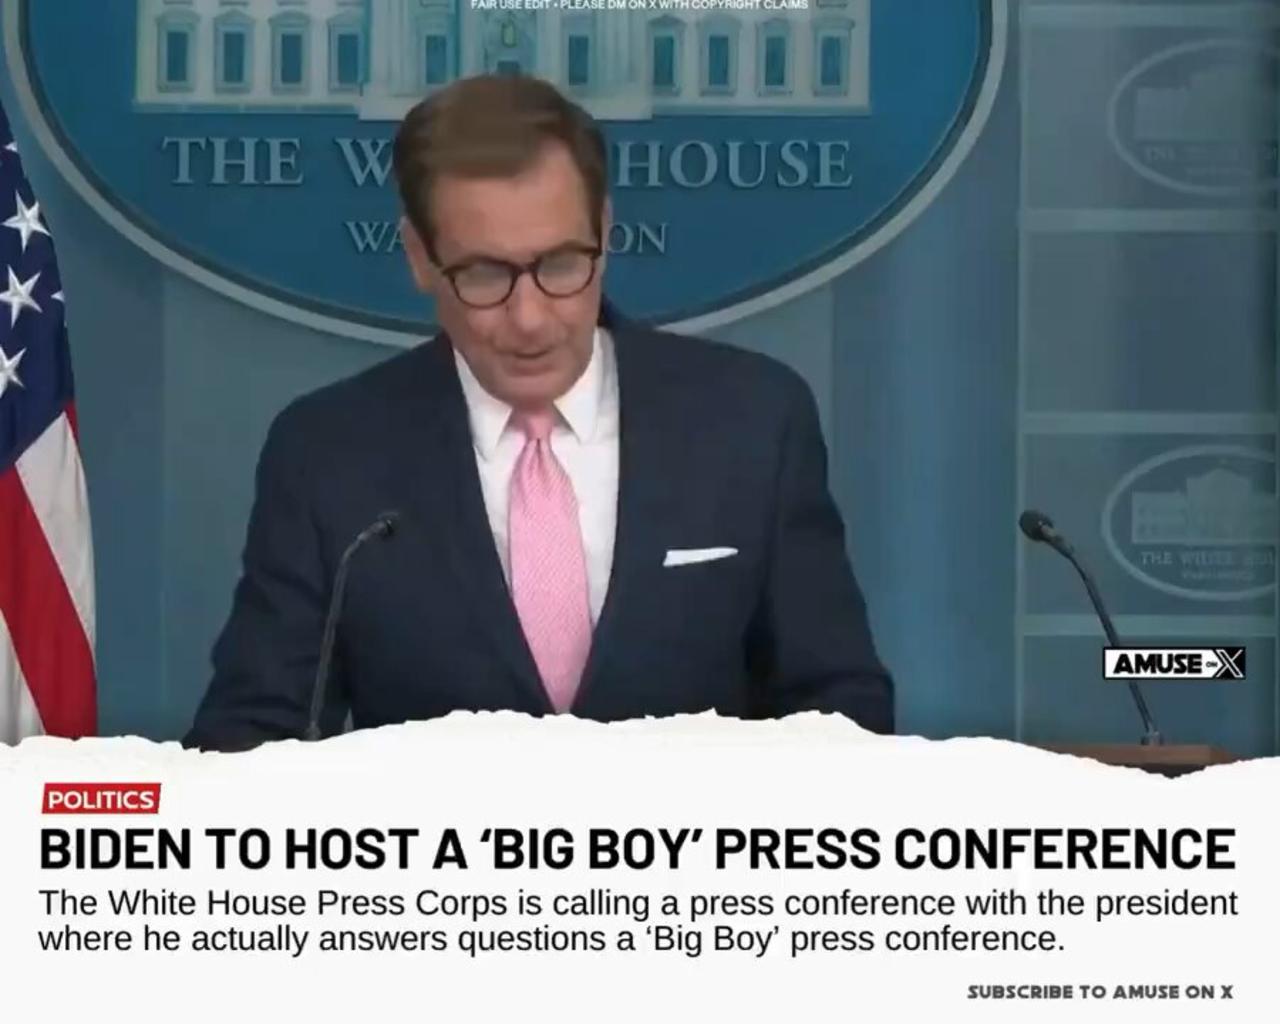 “A Big Boy Press Conference”?? 🤣